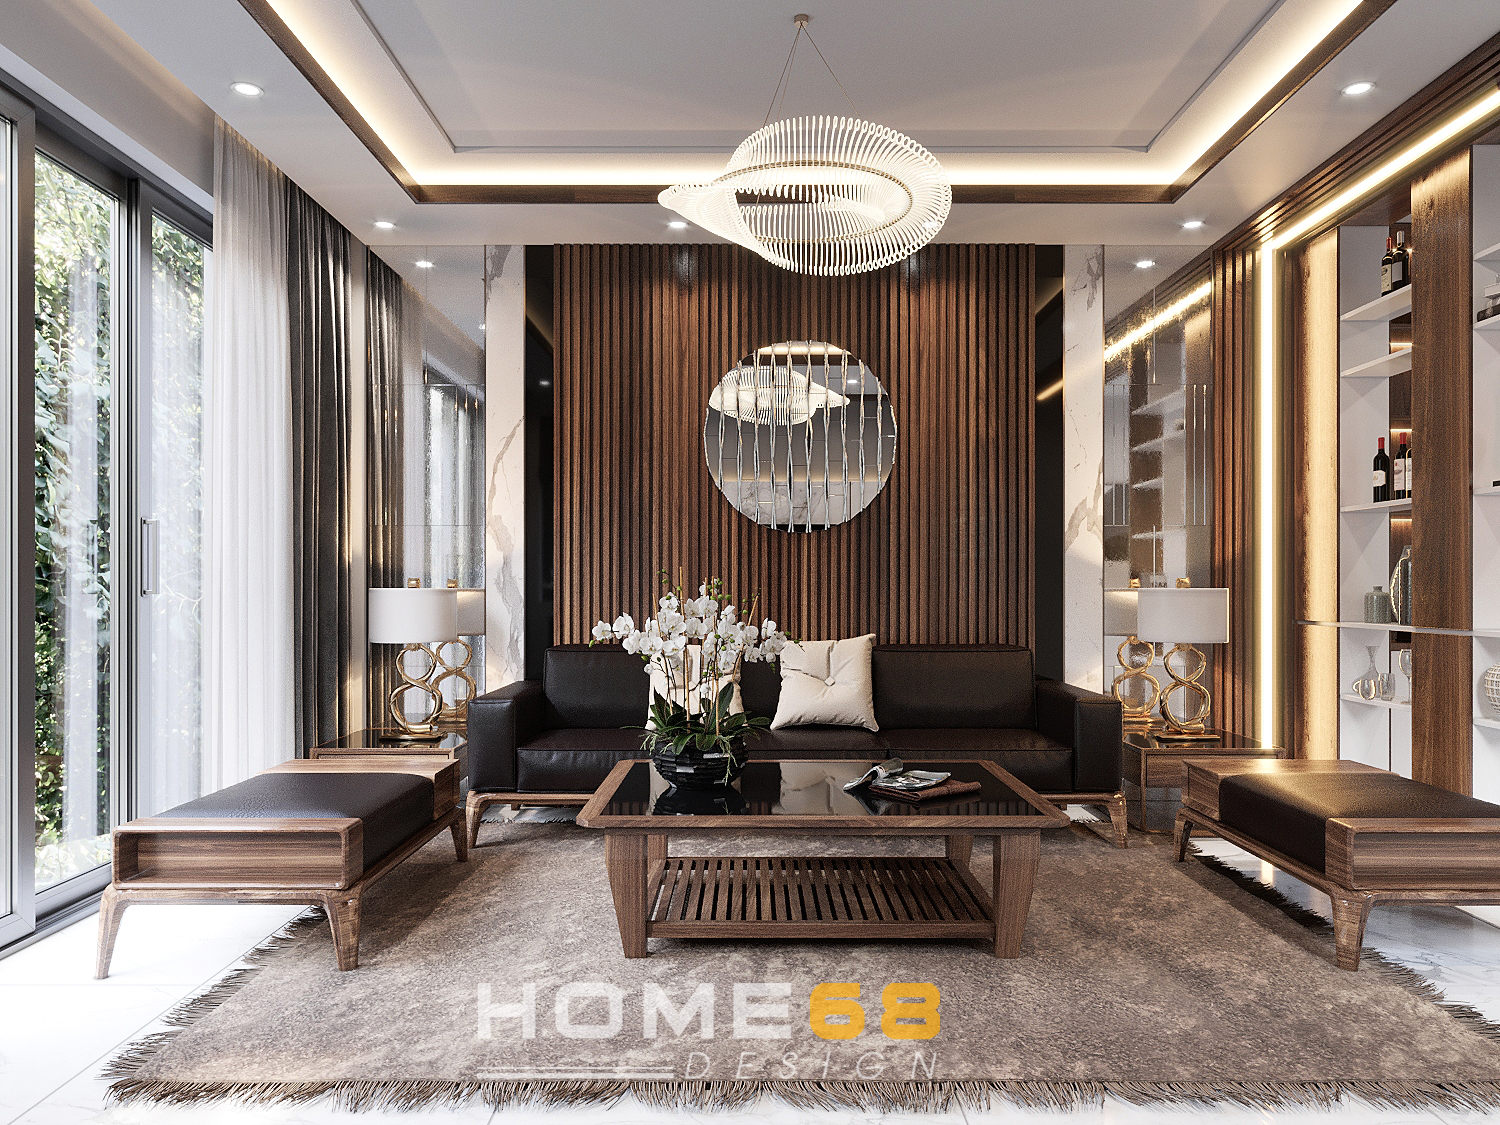 Trang trí phòng khách với nội thất phòng khách hiện đại sẽ tạo không gian sống mộc mạc và tinh tế hơn. Với sự đa dạng của các sản phẩm, bạn có thể linh hoạt lựa chọn tùy theo sở thích của mình. Bấm vào hình ảnh liên quan để khám phá thêm về bộ sưu tập đồ nội thất phòng khách hiện đại đầy thú vị của chúng tôi.